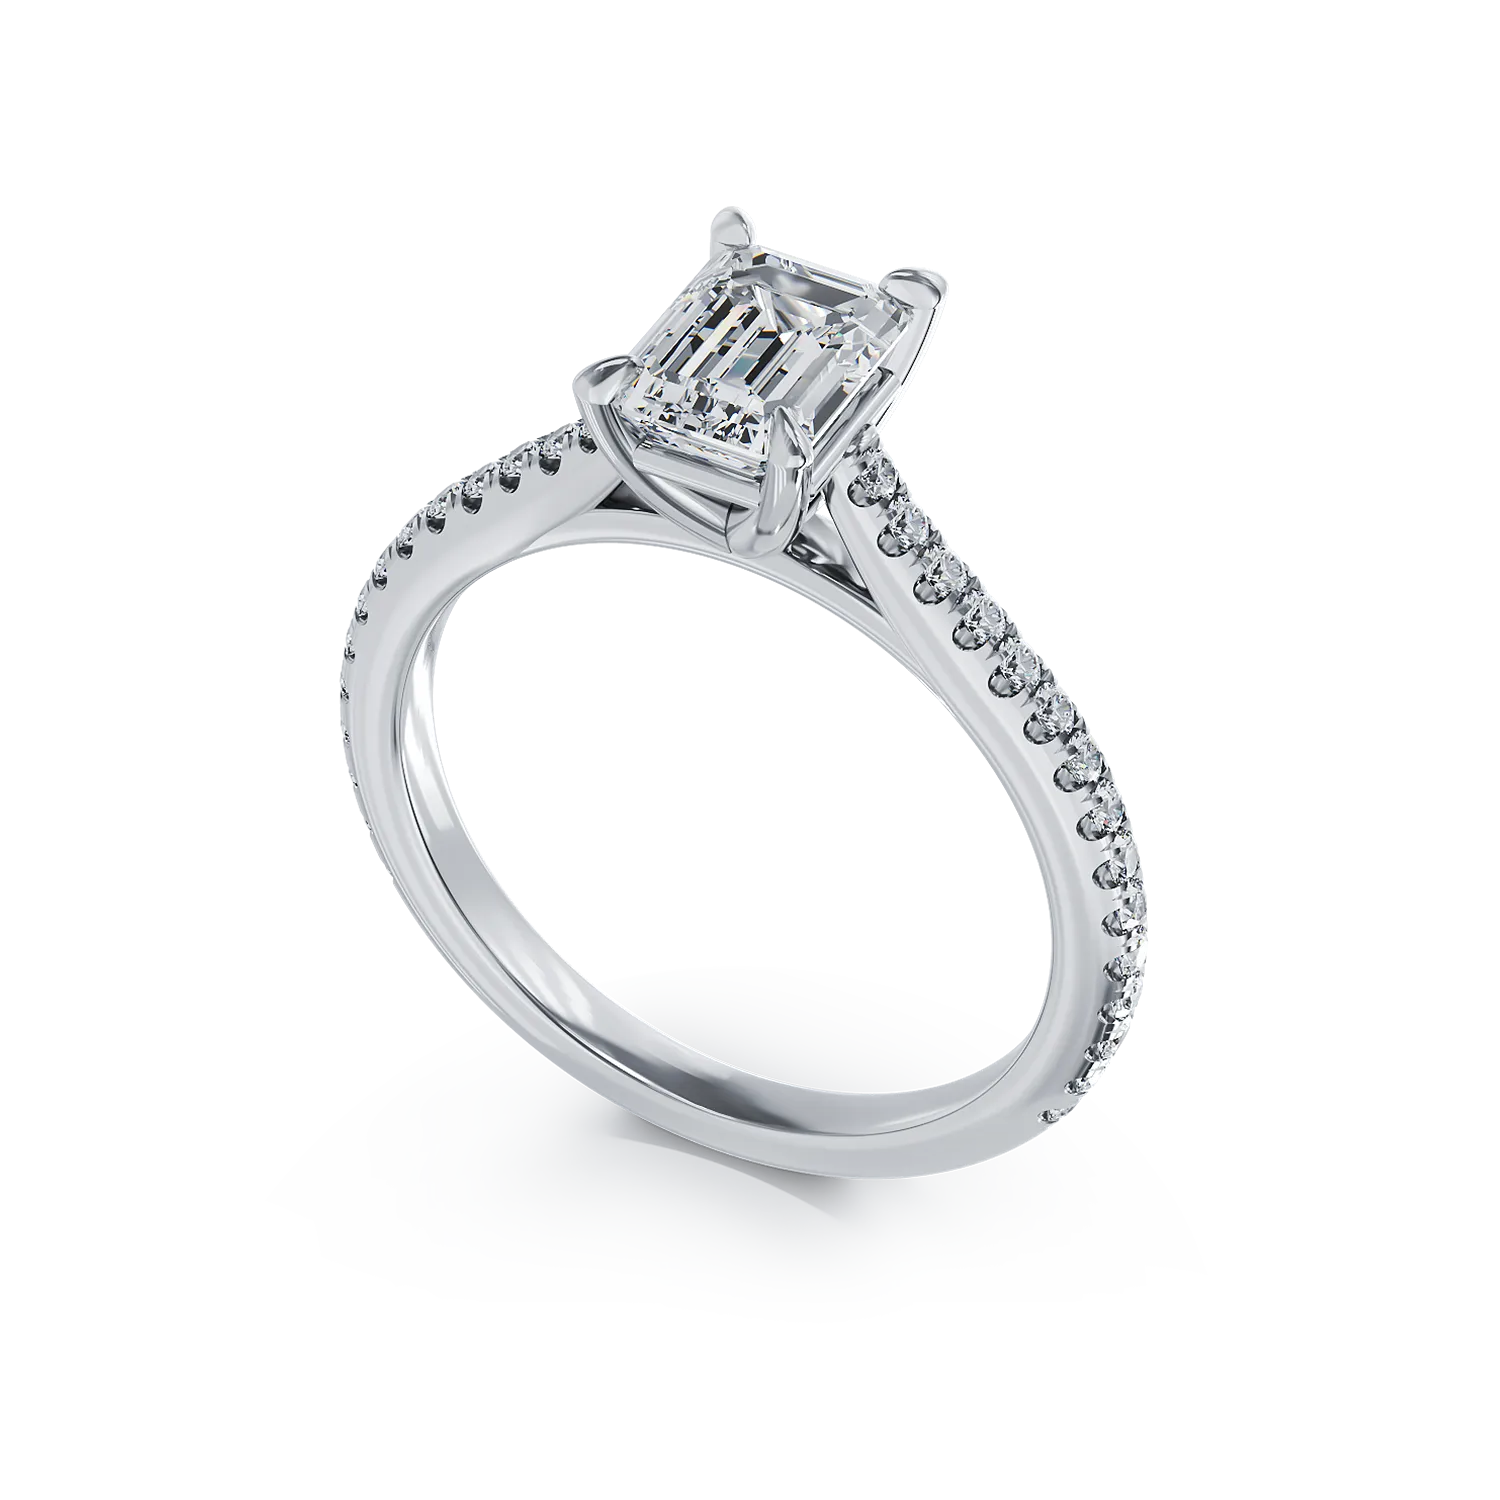 Годежен пръстен от платина с диамант 1гкт u диаманти 0.226гкт